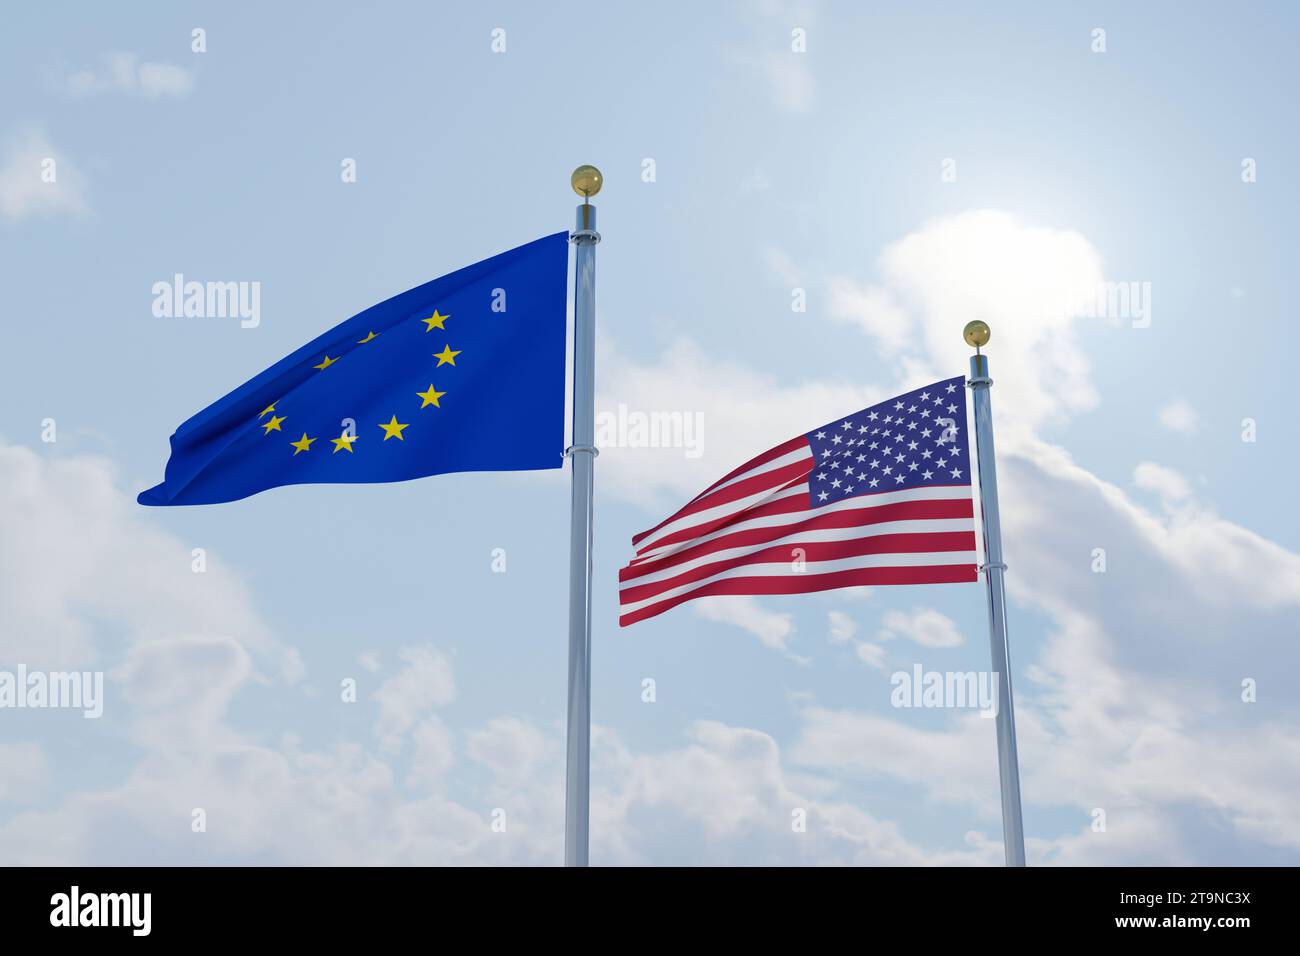 Die Flagge der Europäischen Union mit der Flagge der Vereinigten Staaten von Amerika, handelspolitische und politische Beziehungen zwischen Europa und Amerika Stockfoto